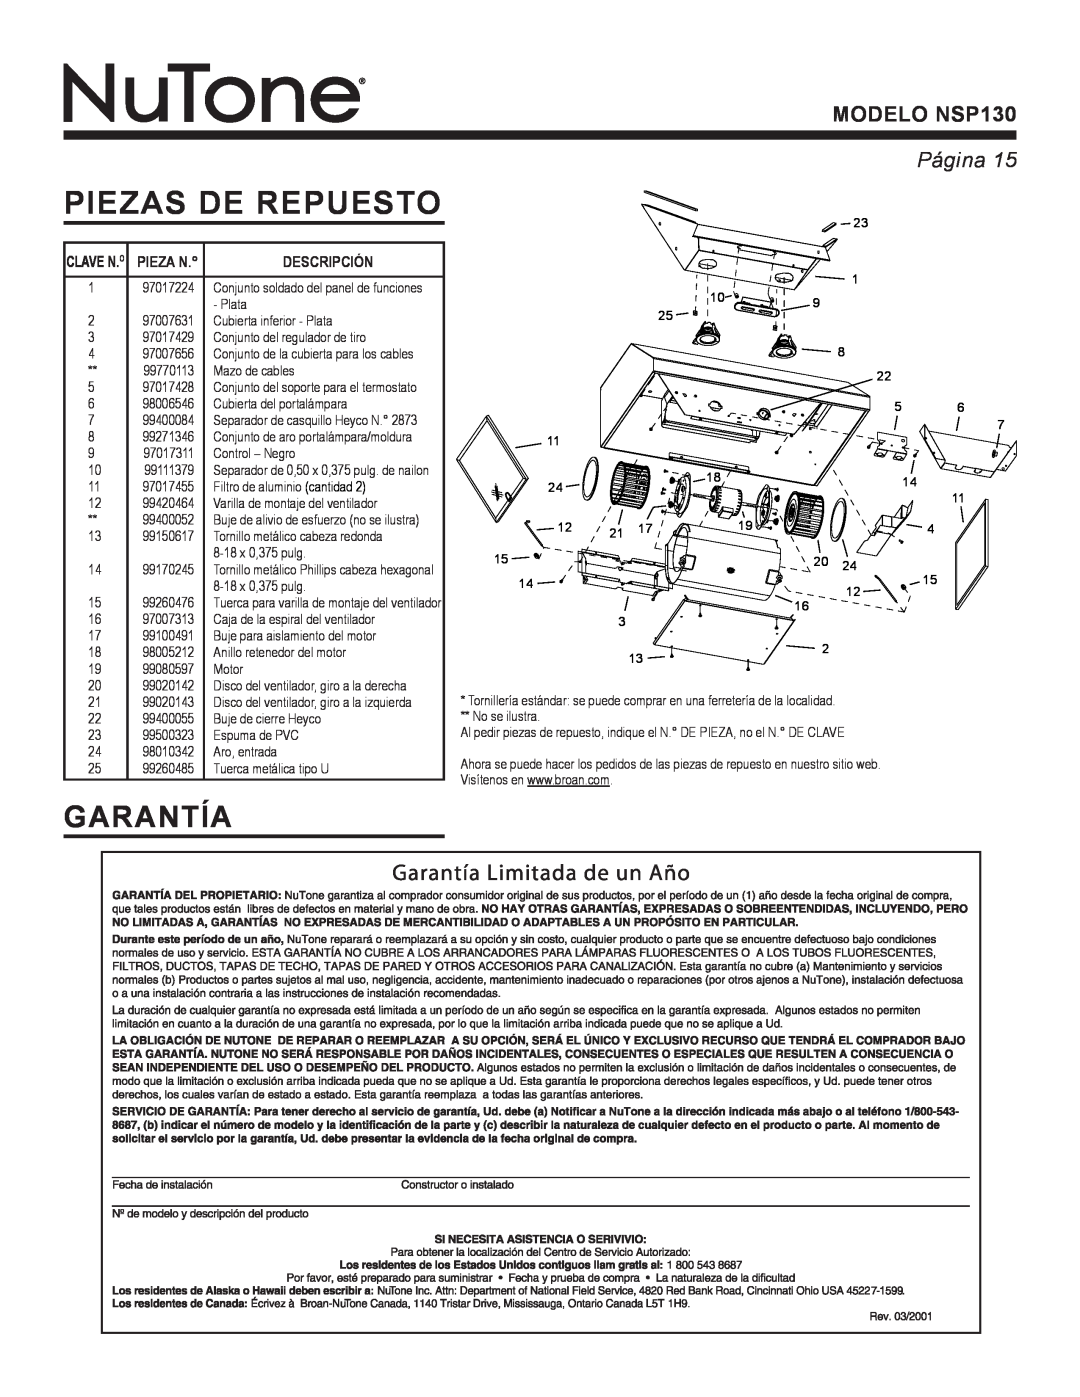 NuTone warranty Piezas De Repuesto, Garantía, MODELO NSP130, Página 